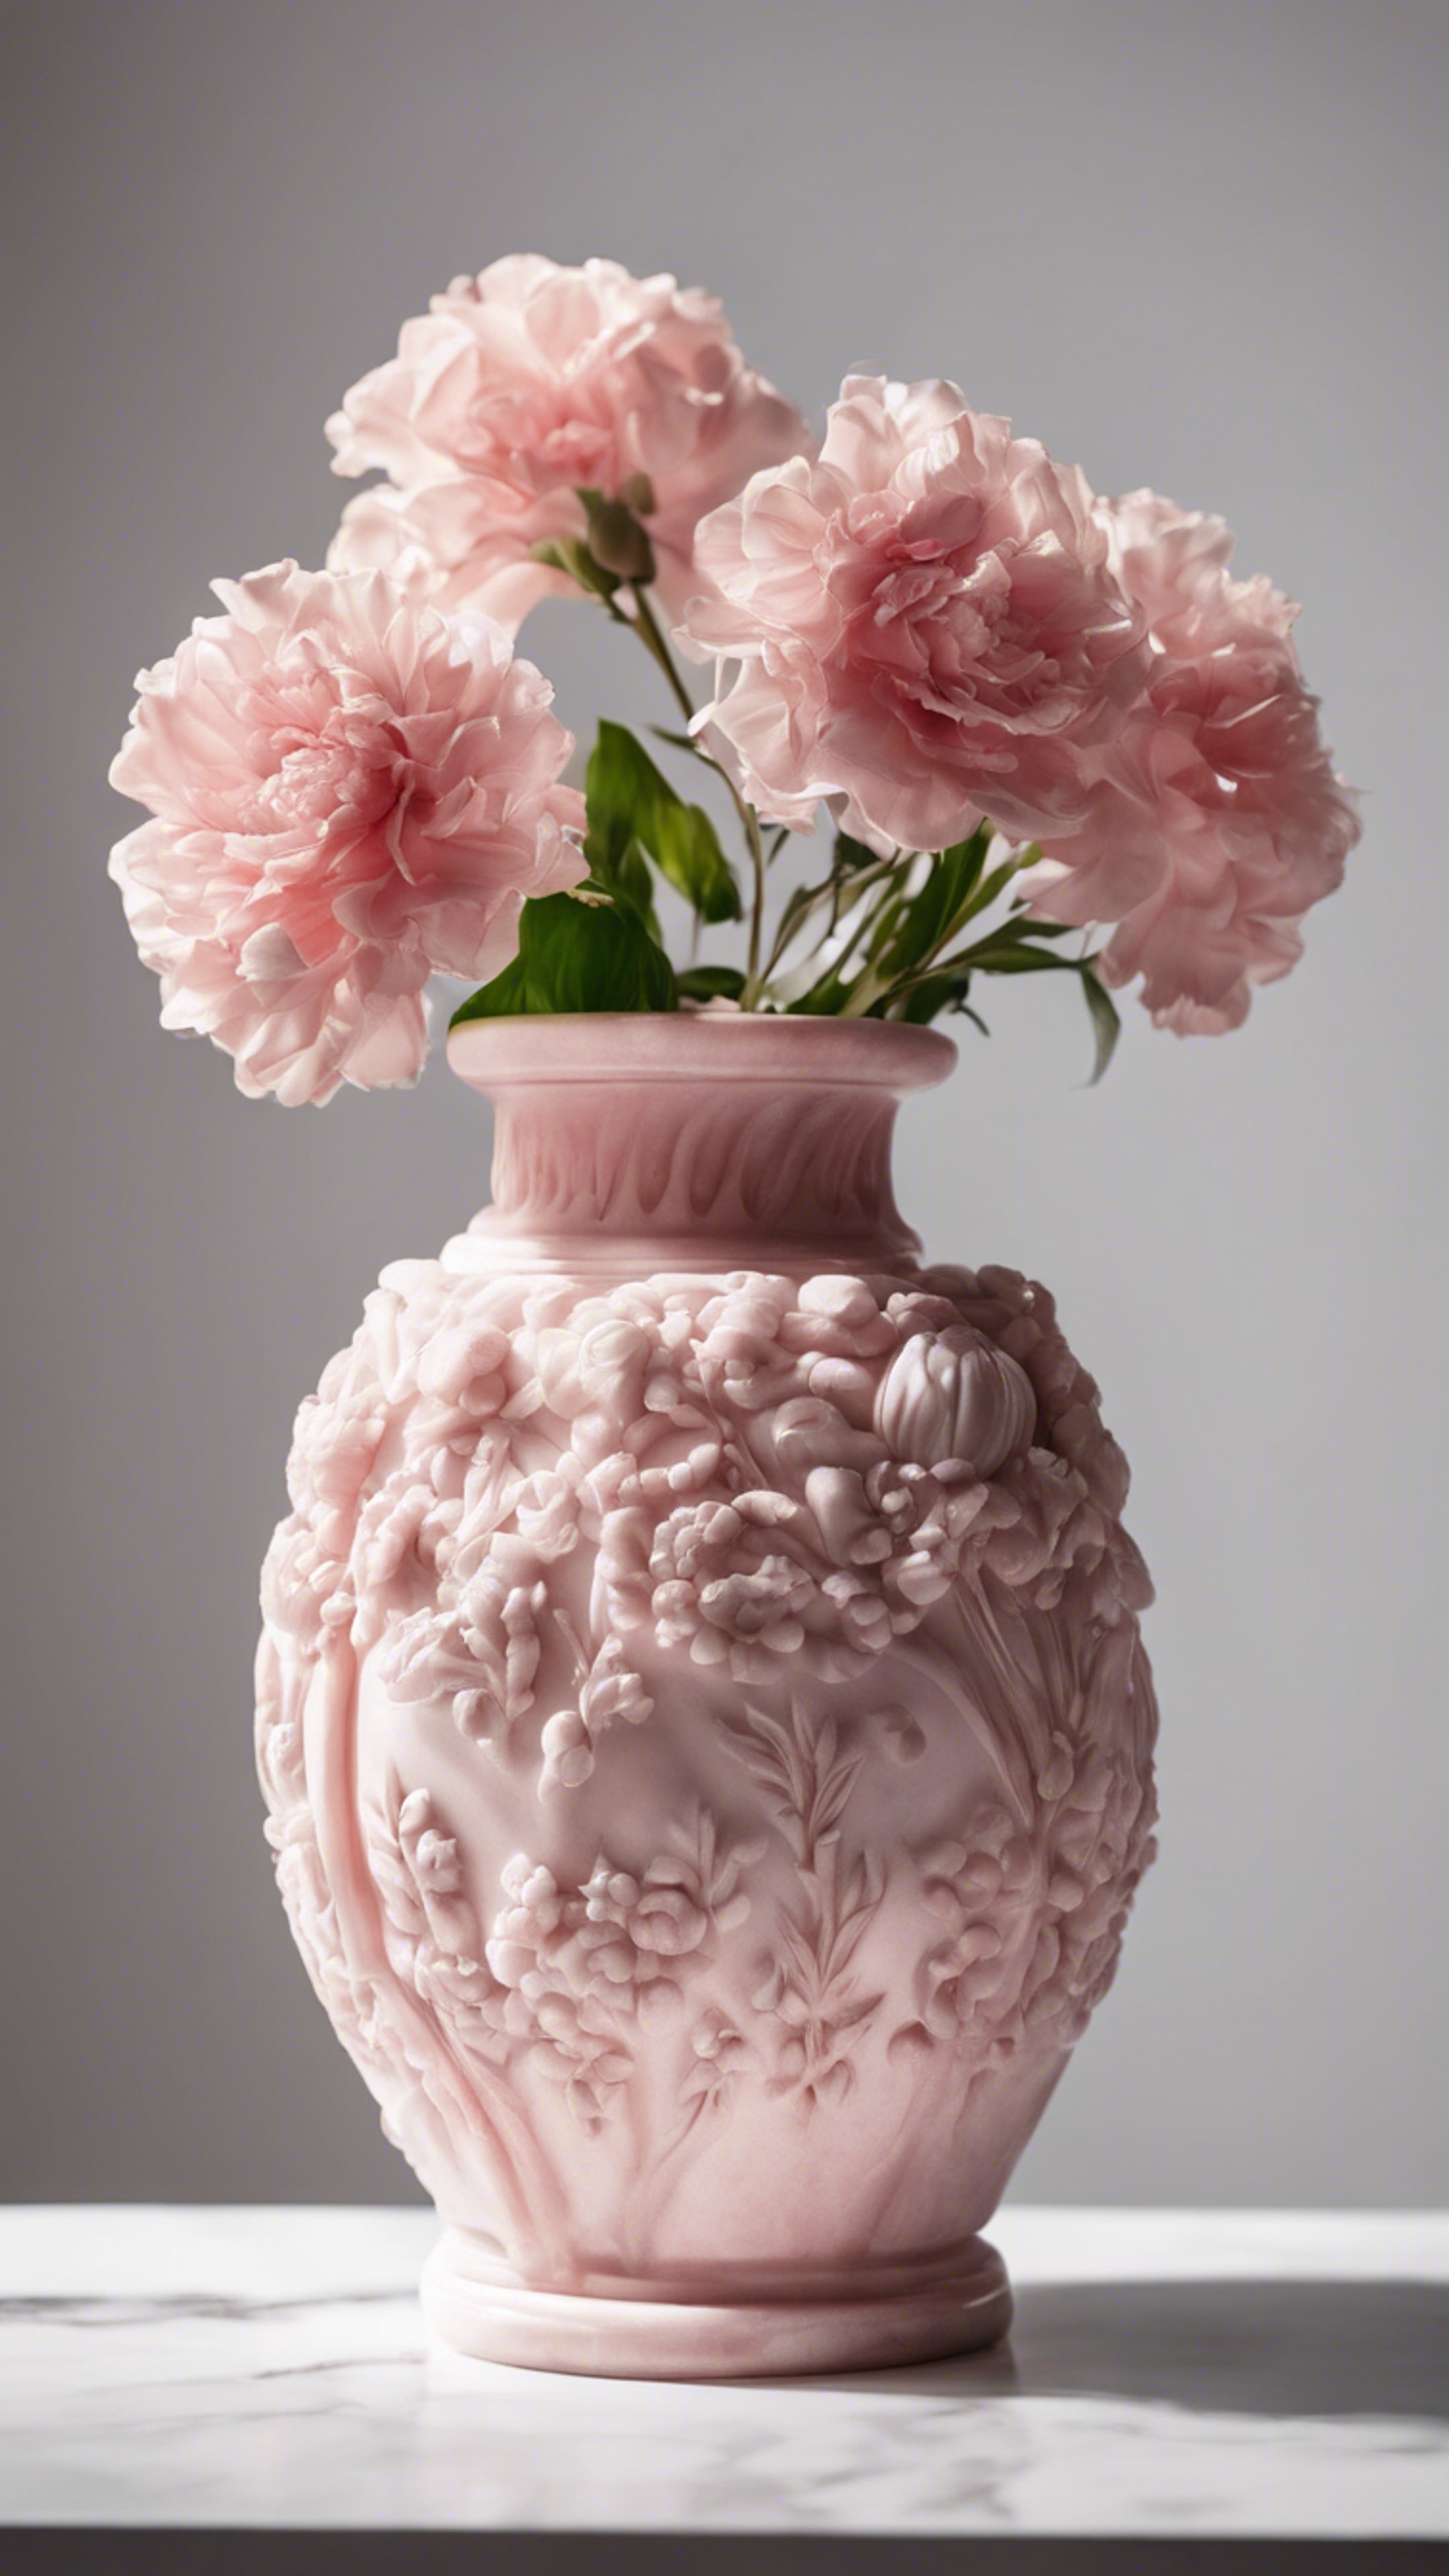 Elegantly carved pink marble flower vase against a white background. Divar kağızı[b14a0bd2340d44aeb9d9]